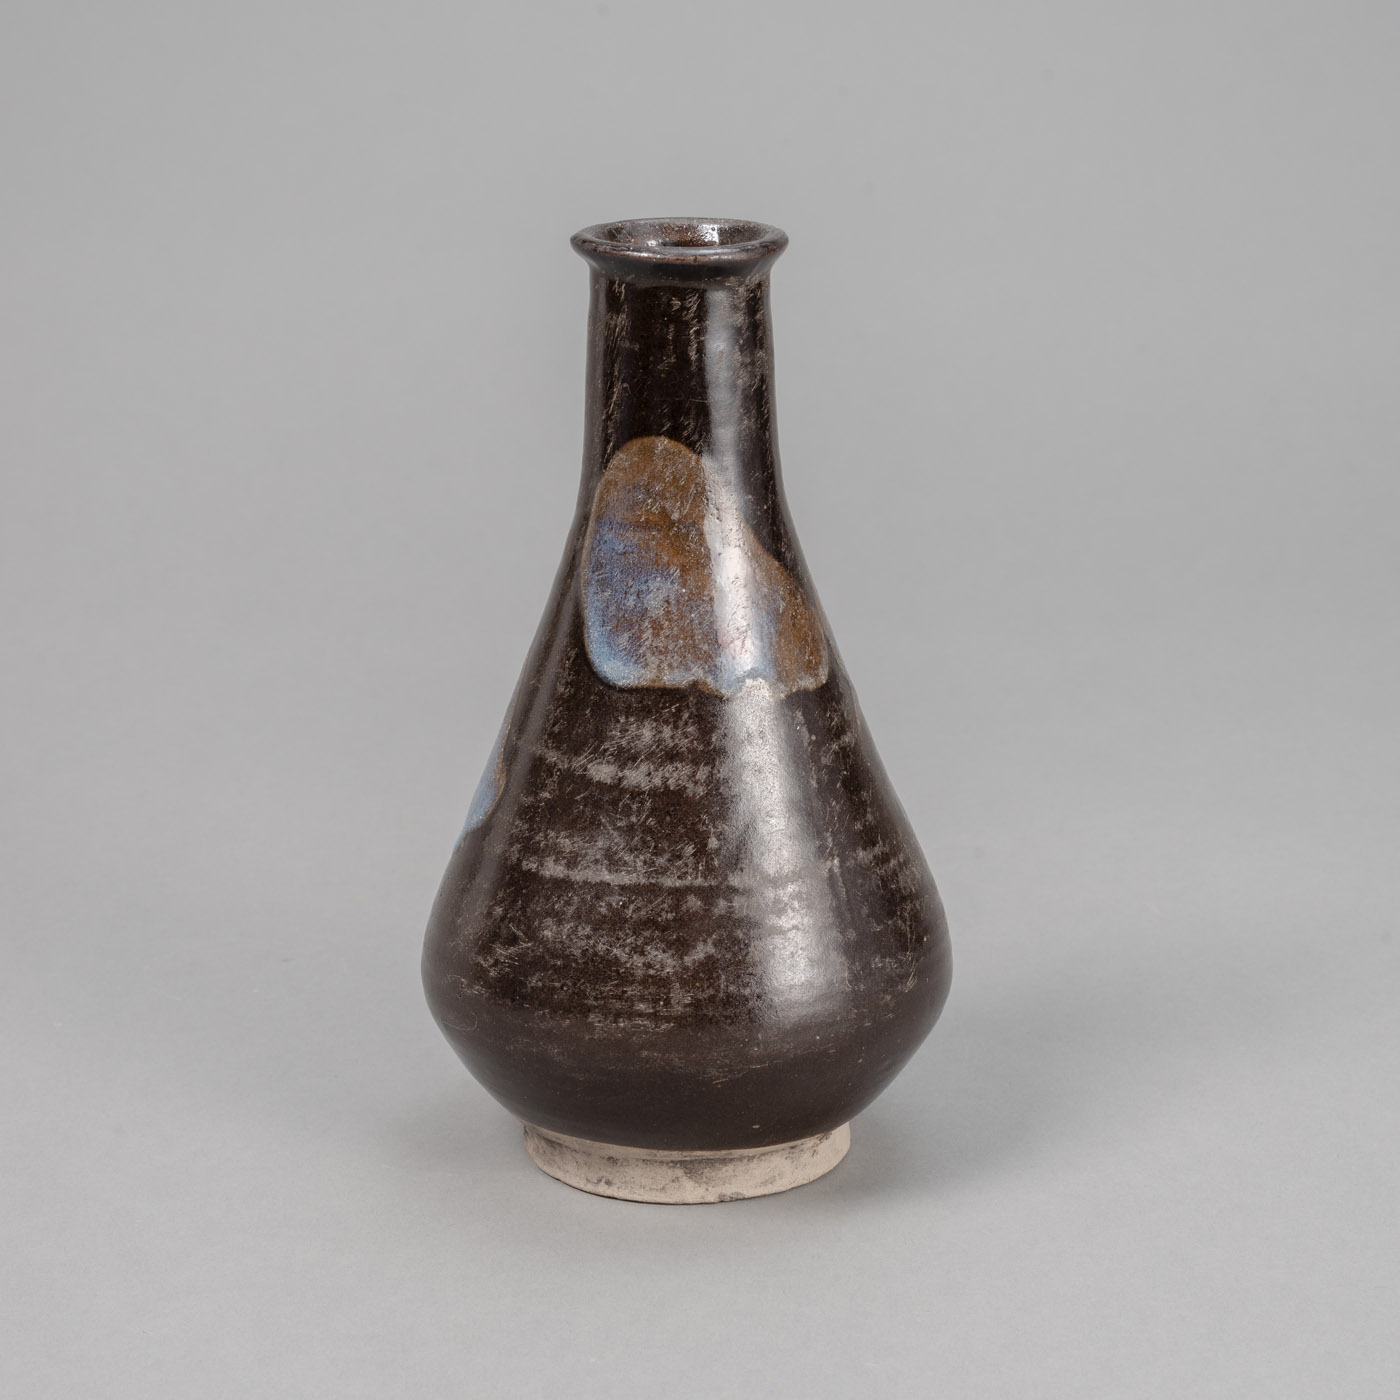 <b>Vase aus Irdenware mit dunkelbrauner Glasur und dekorativem 'Splash'-Dekor in bläulichen Tönen</b>